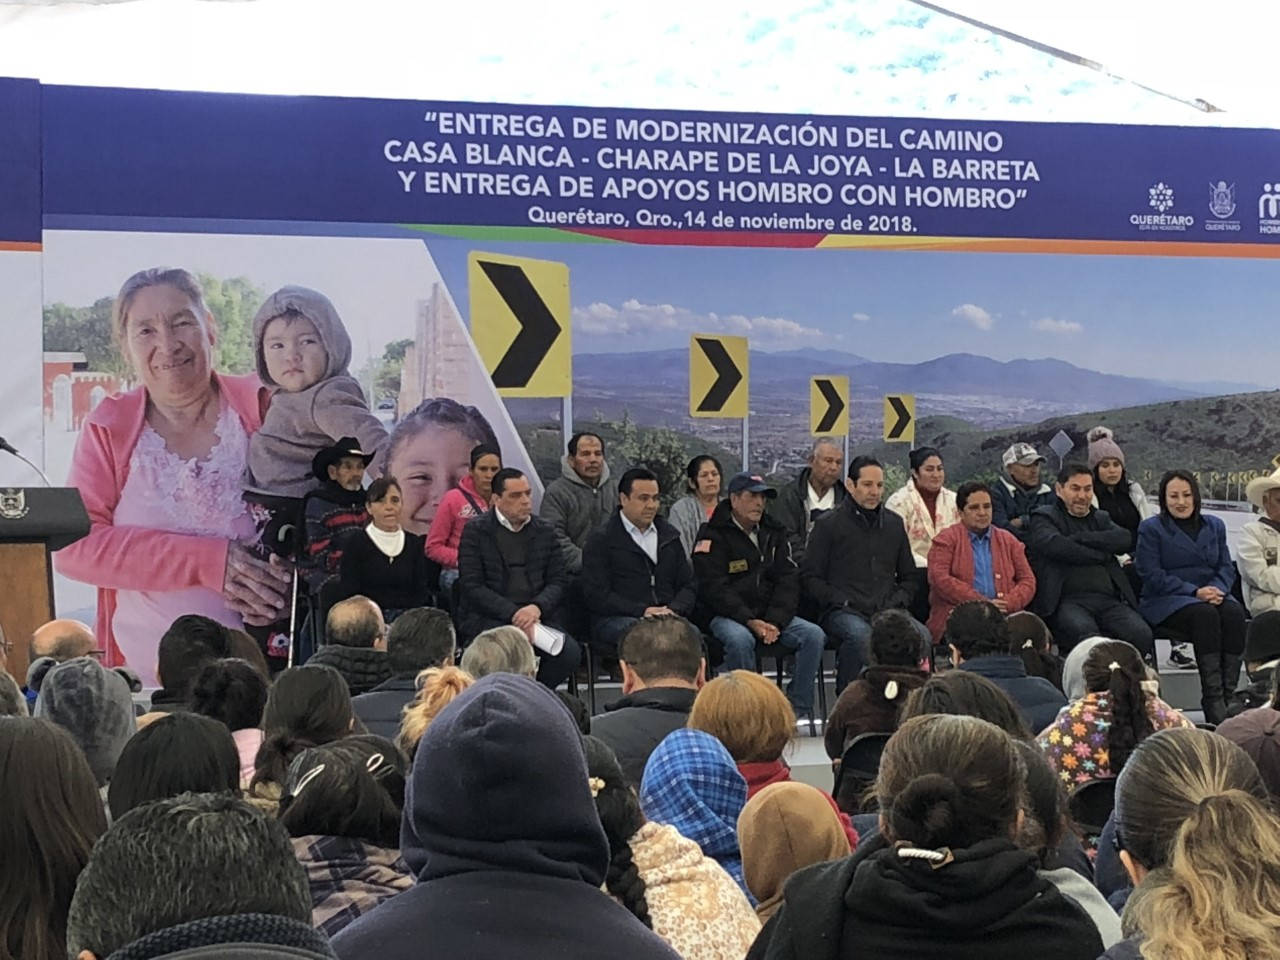  Gobierno de Querétaro invierte más de 83 mdp en camino Casa Blanca-La Barreta